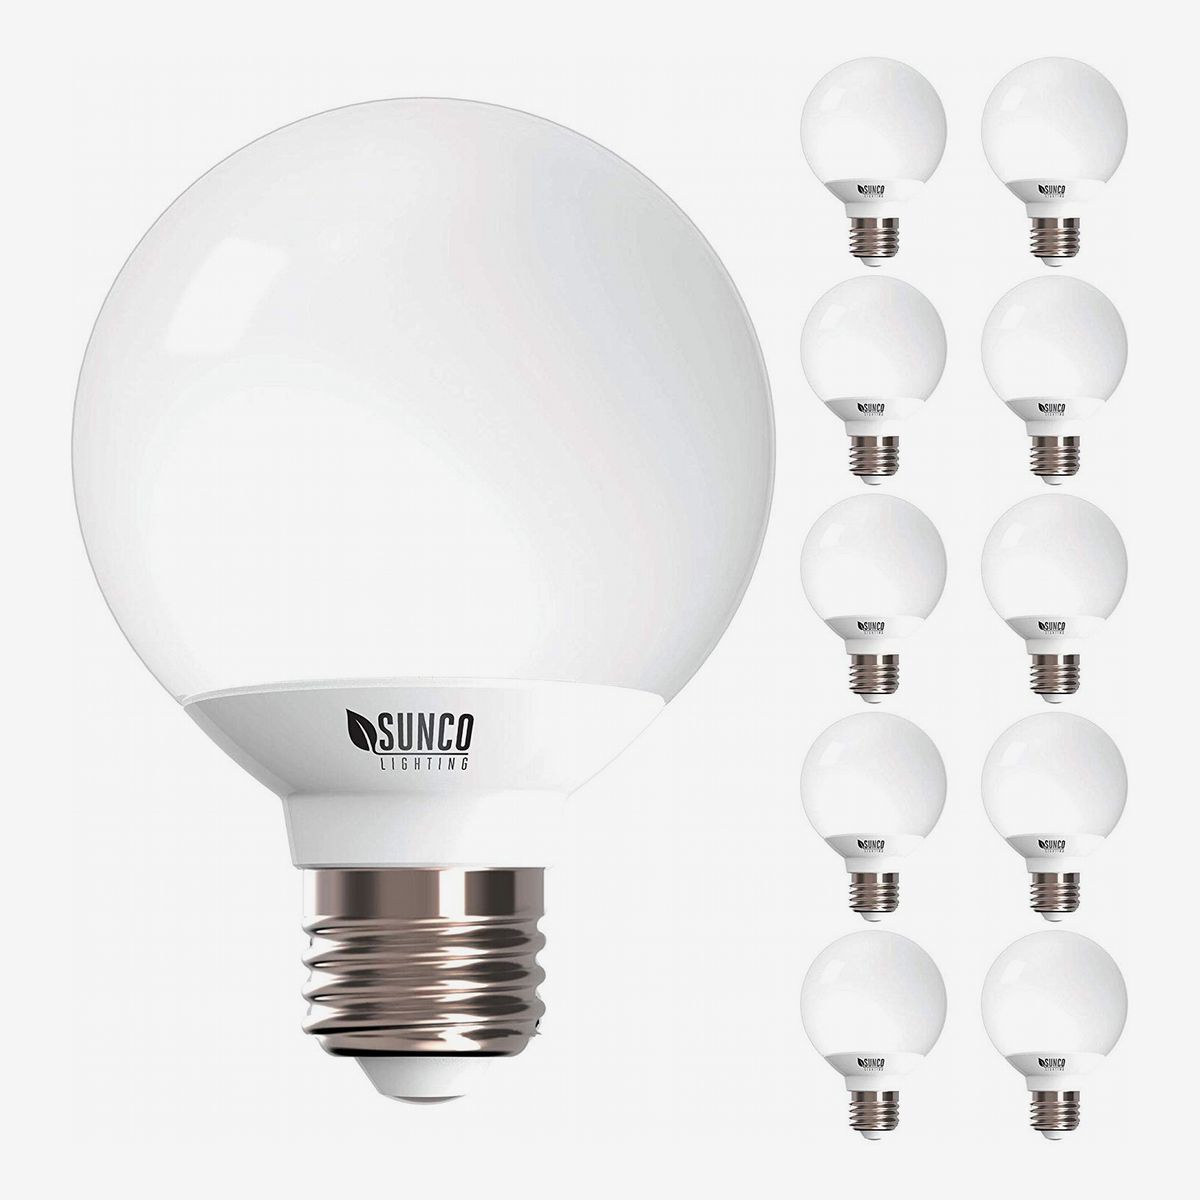 14 Best Led Light Bulbs 2020 The, Best Led Light Bulbs For Bathroom Vanity